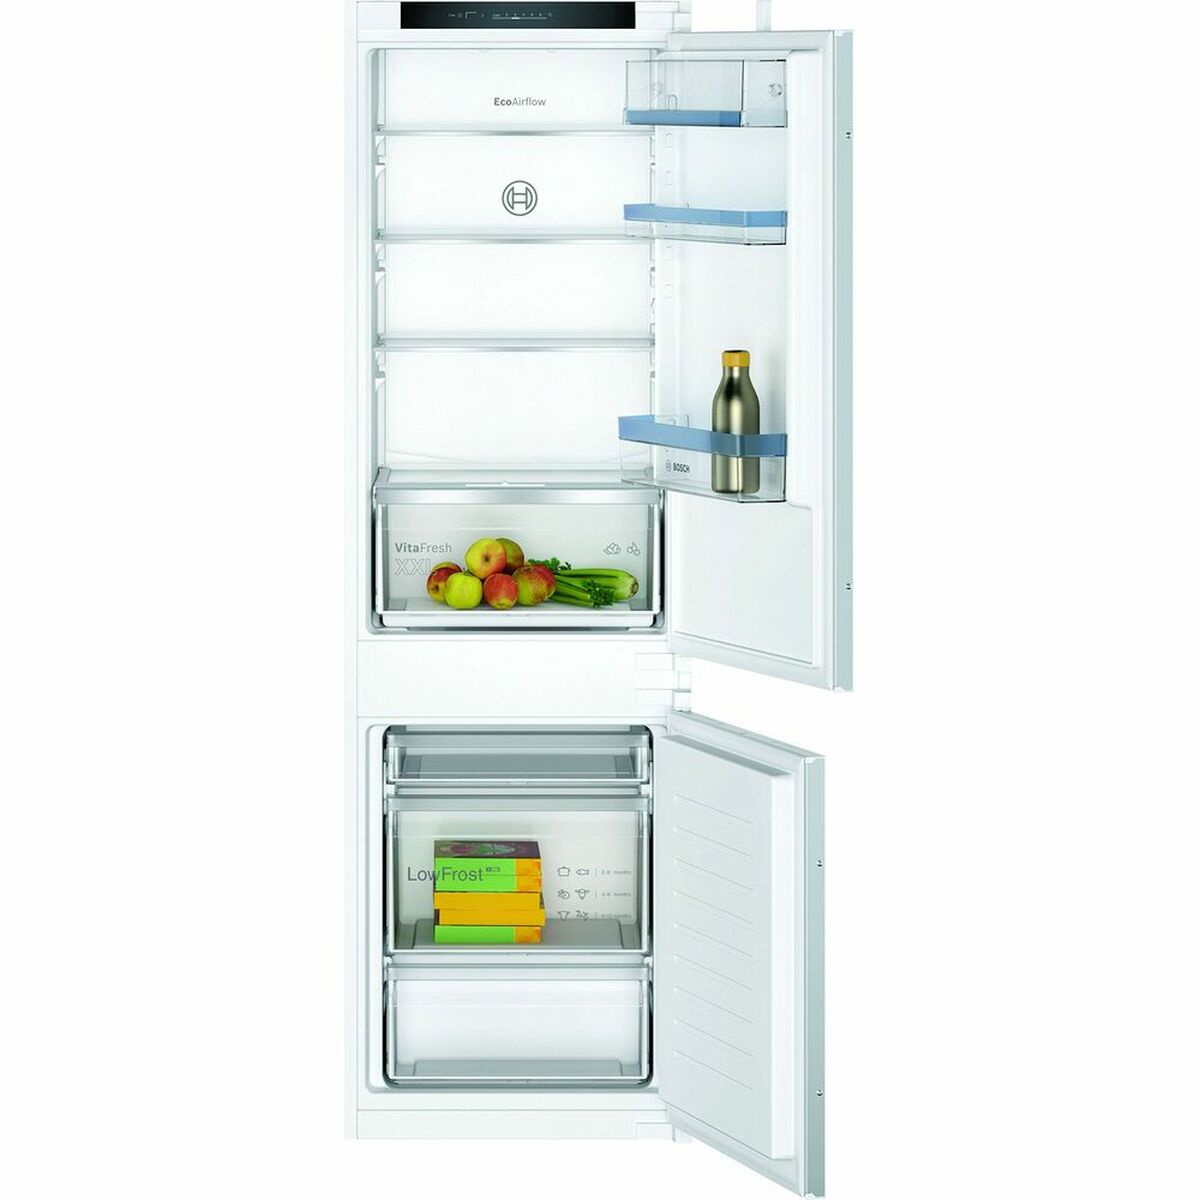 Kombinēts ledusskapis BOSCH (177 x 55 cm)